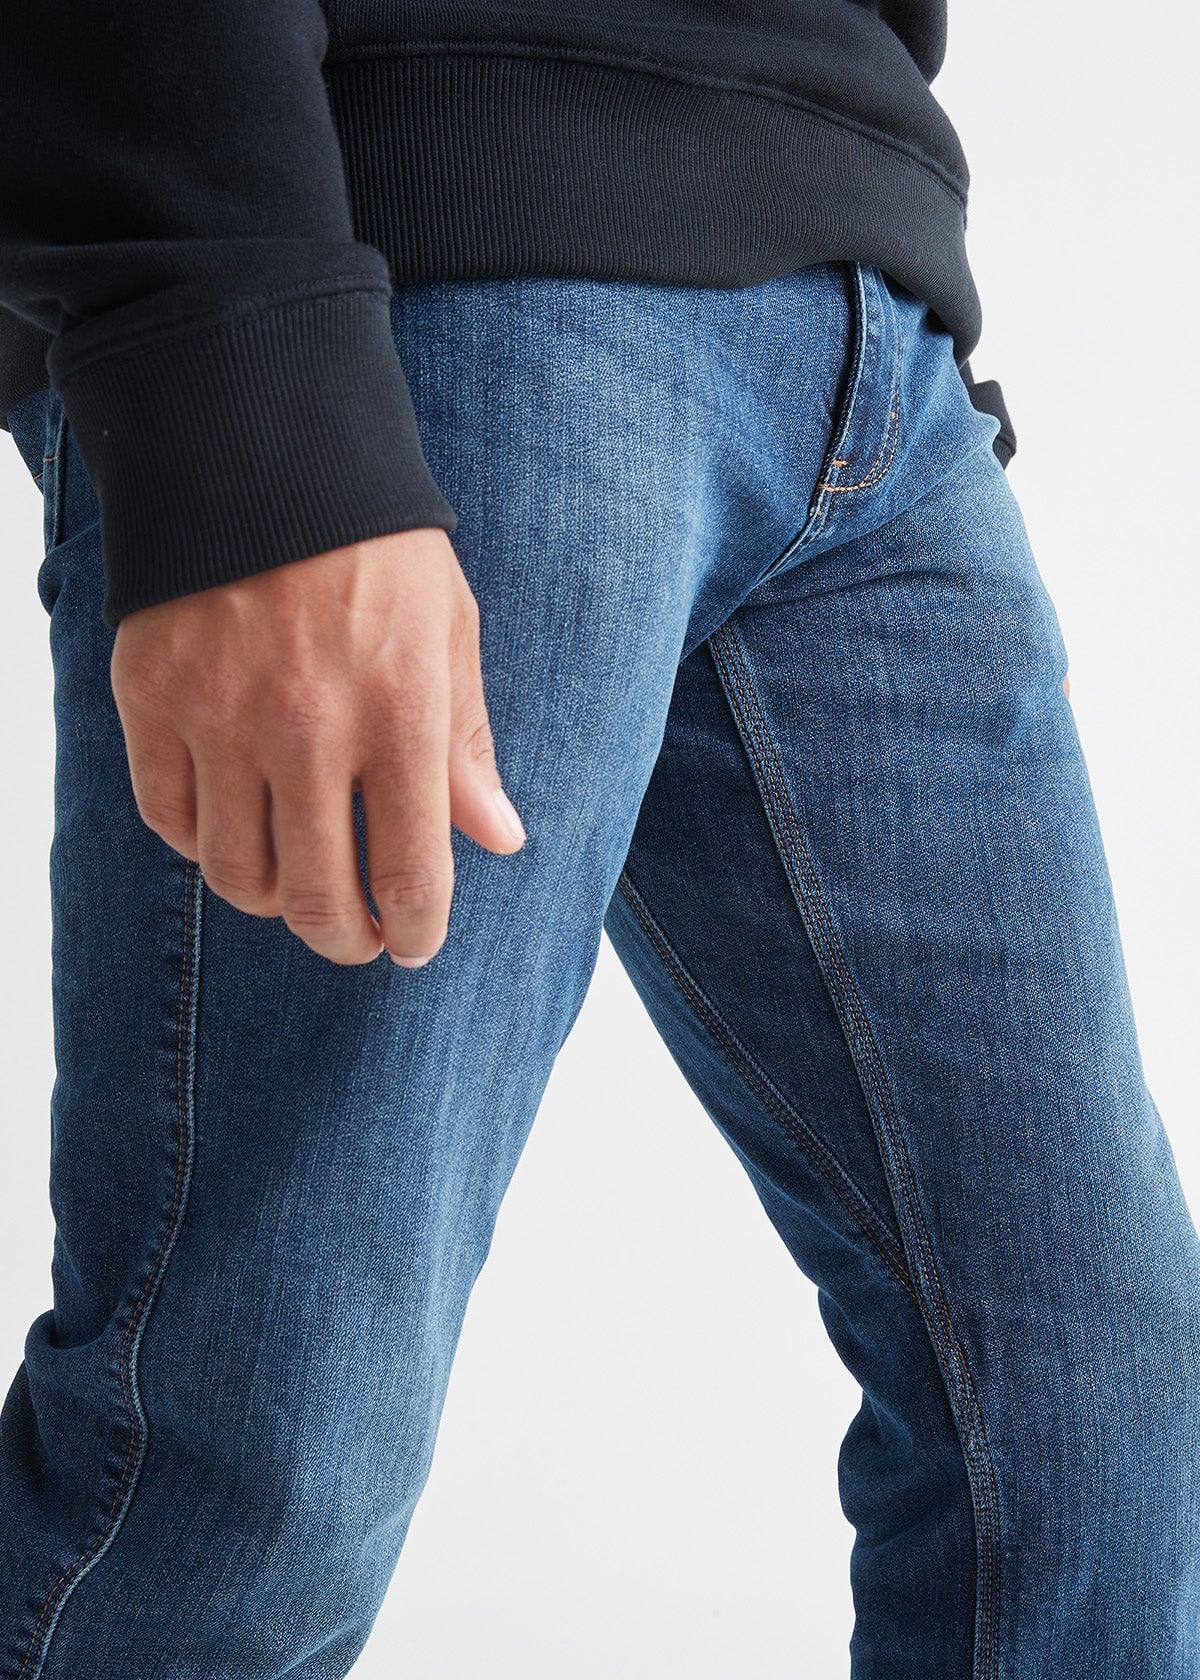 DUER Men's Fireside Denim Relaxed Taper Jeans - True Outdoors